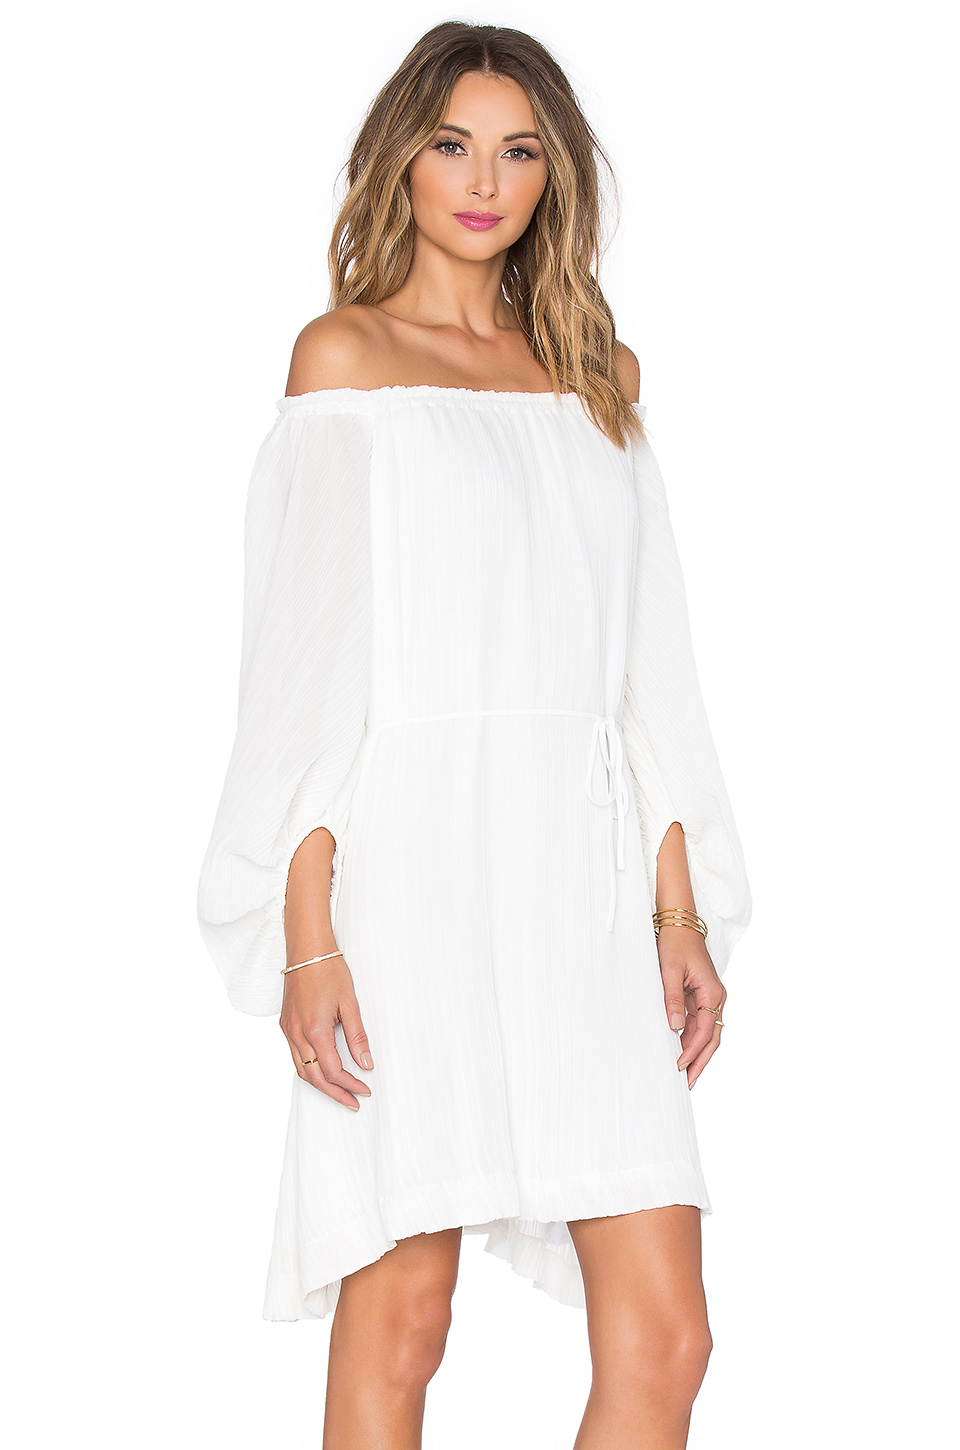 designerecology: Shona Joy Dress White